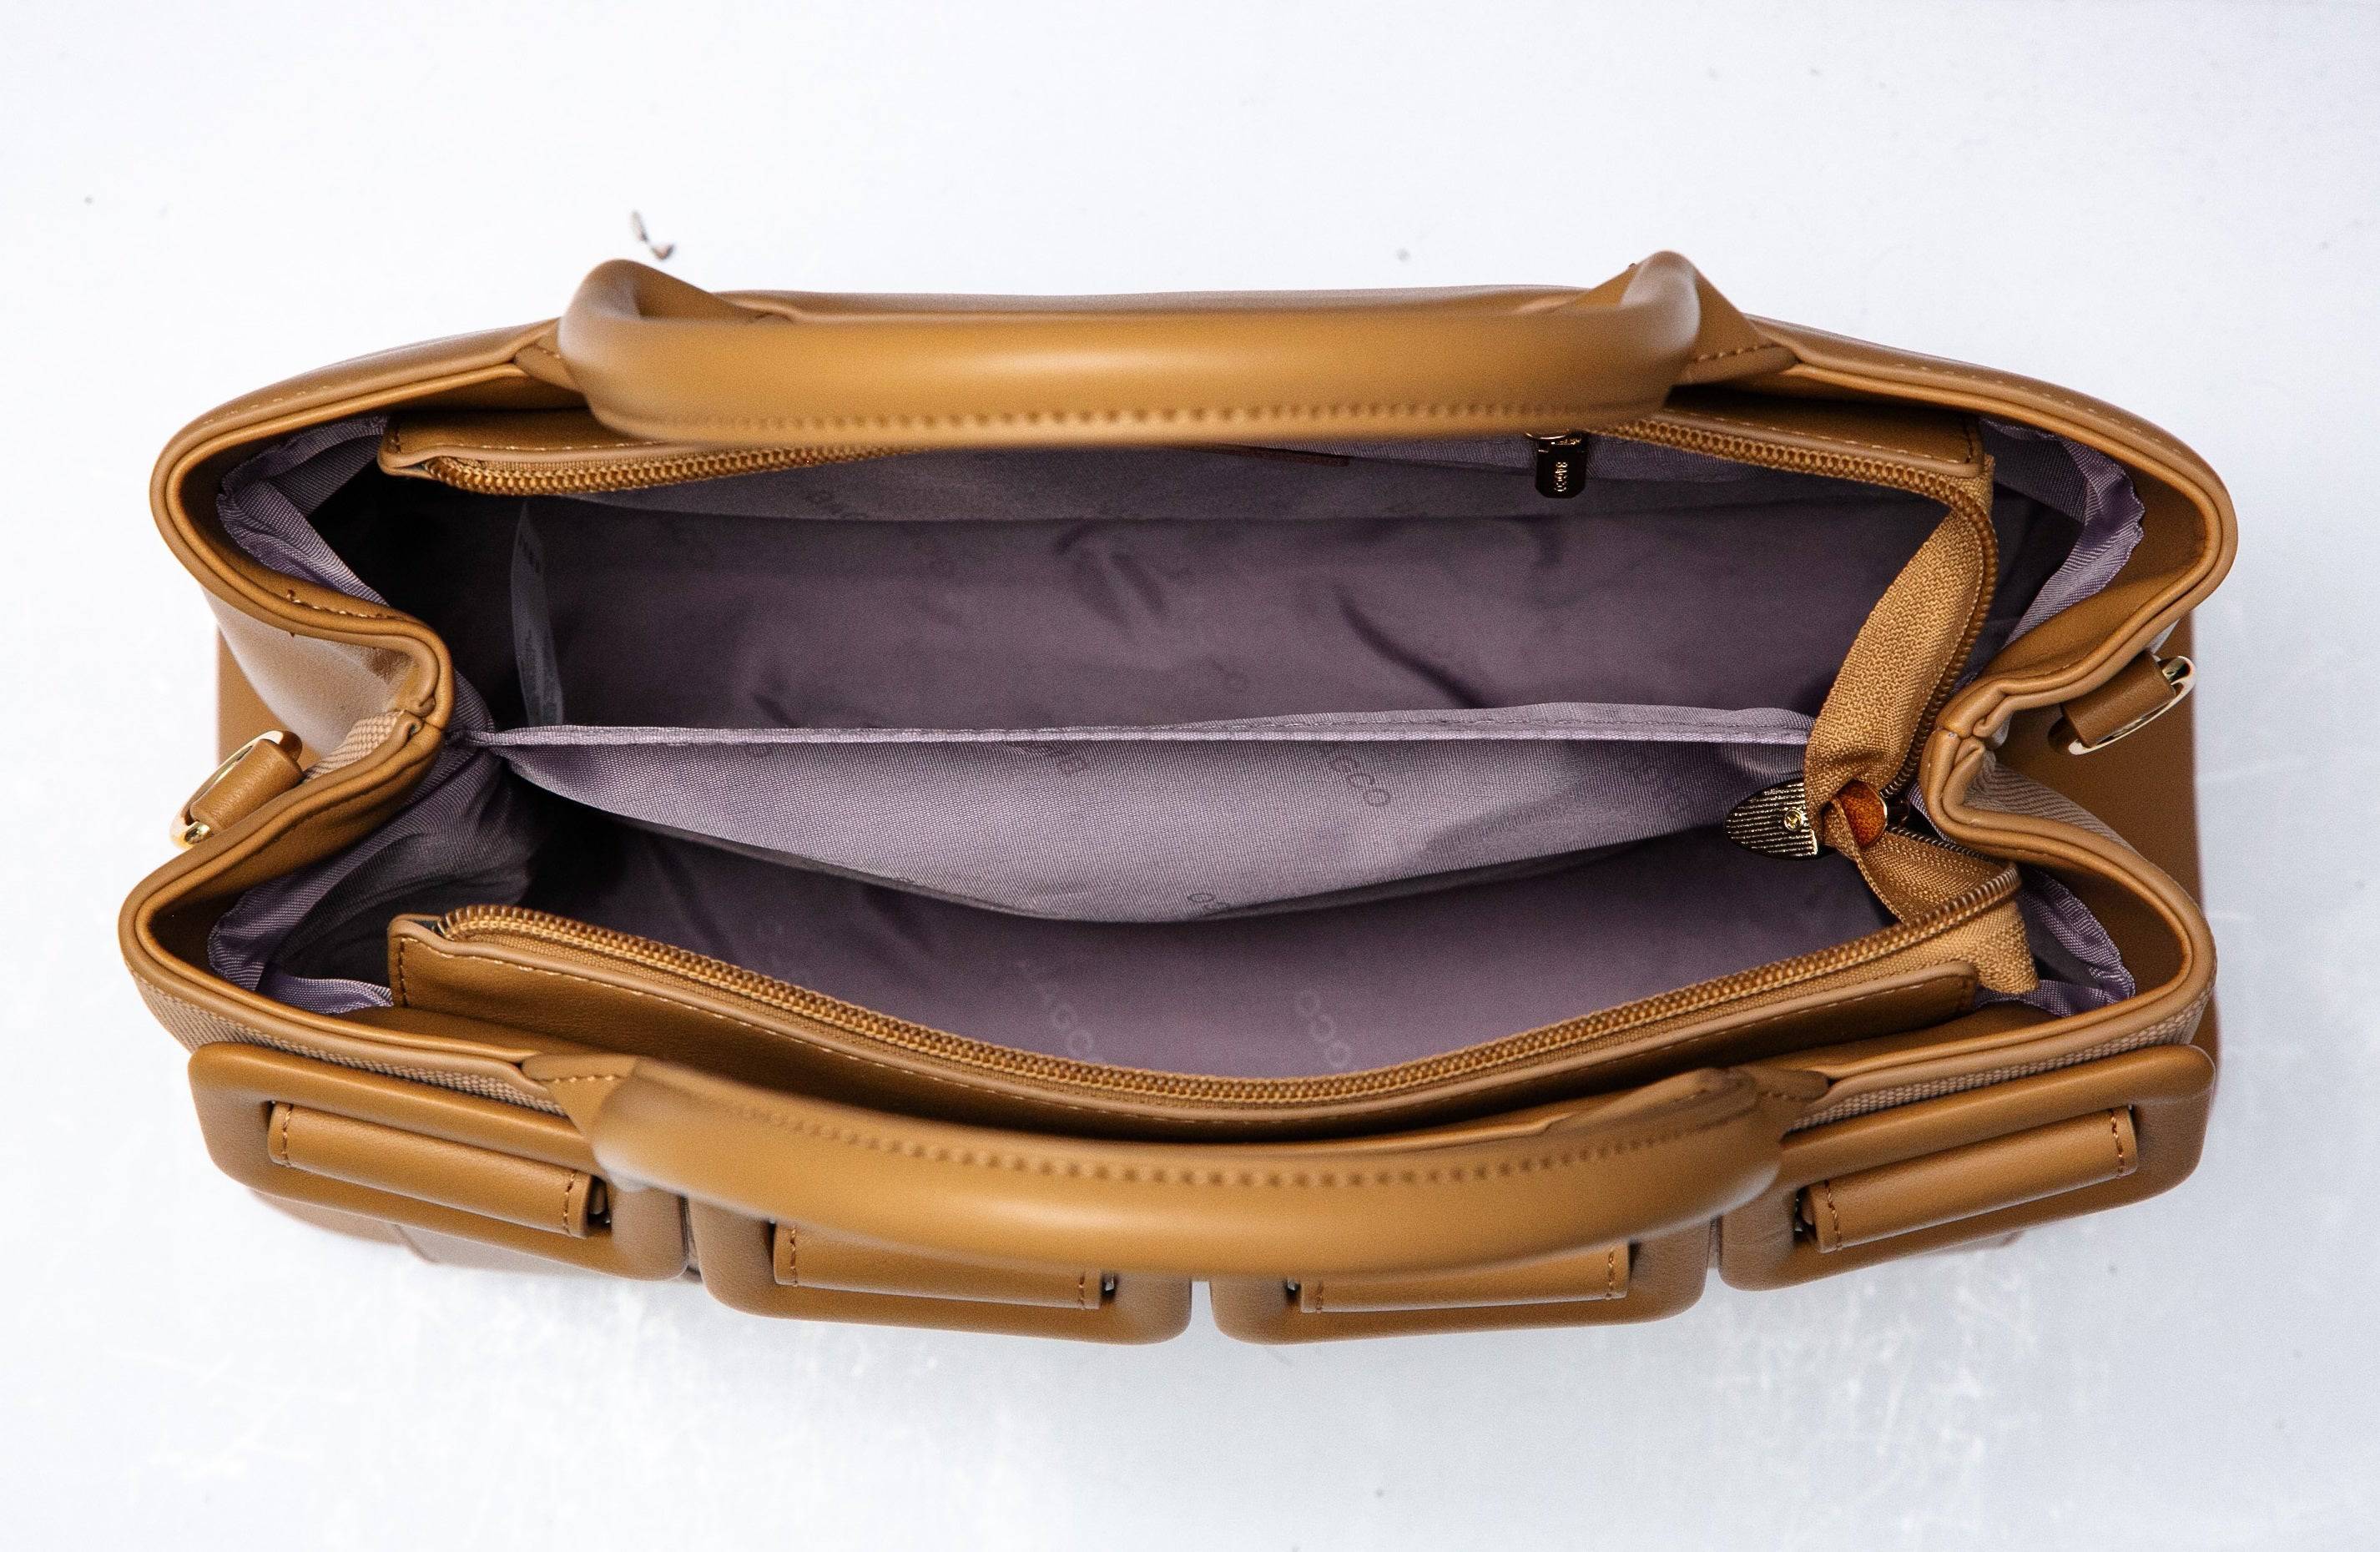 حقيبة نسائية فخمة باللون البنى مناسبة لأوقات العمل والاحتفالات . - KSA